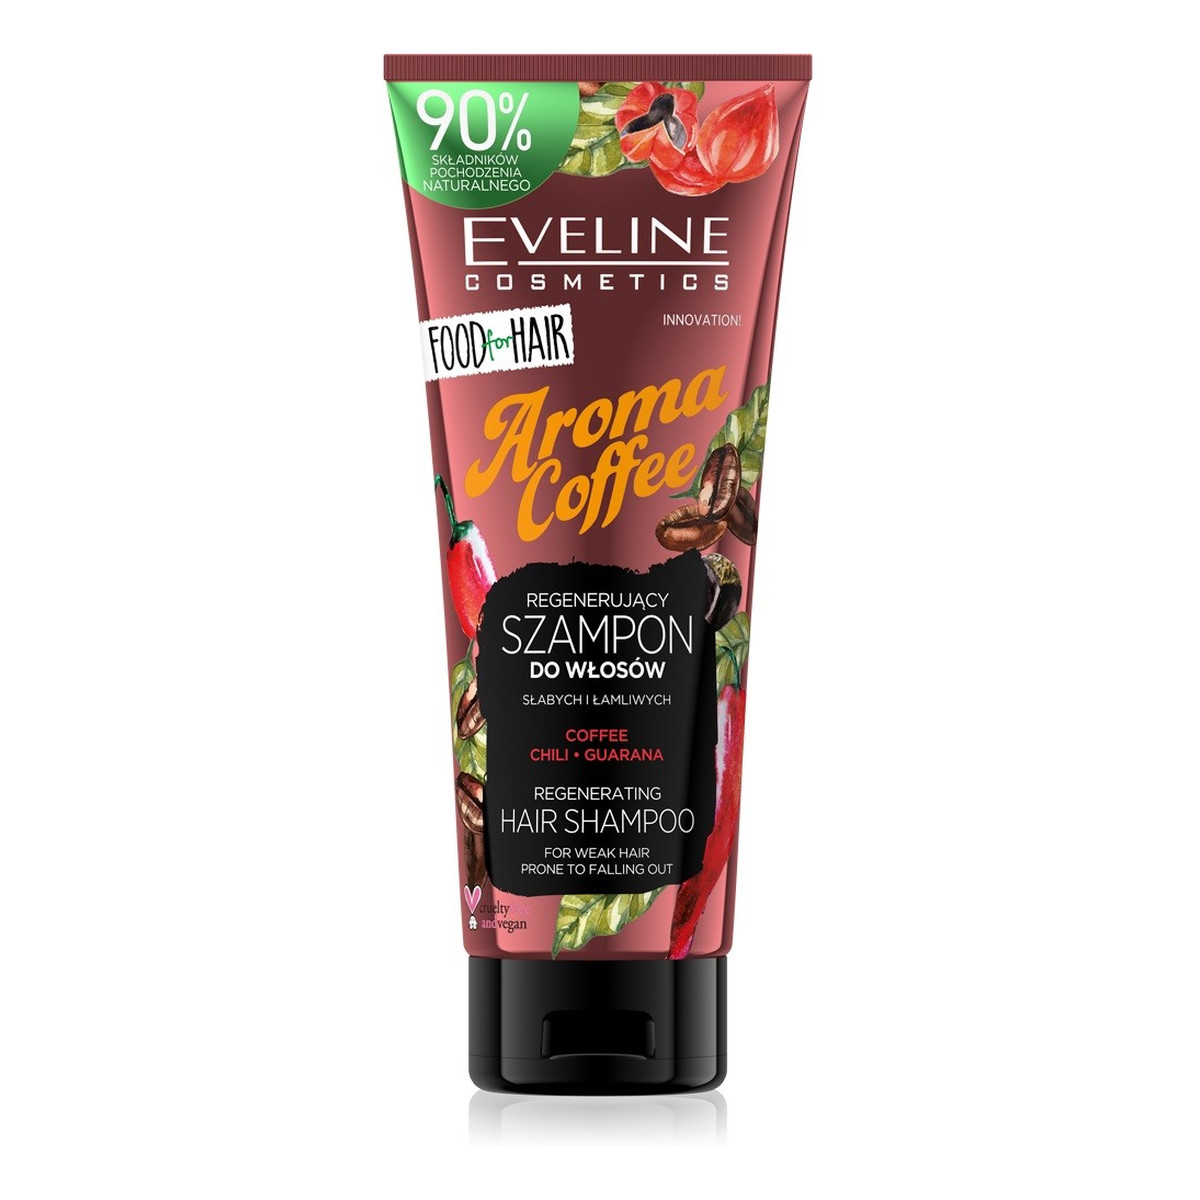 Eveline Food for Hair Aroma Coffee Szampon do włosów słabych i łamliwych - regeneracja i wzmocnienie 250ml